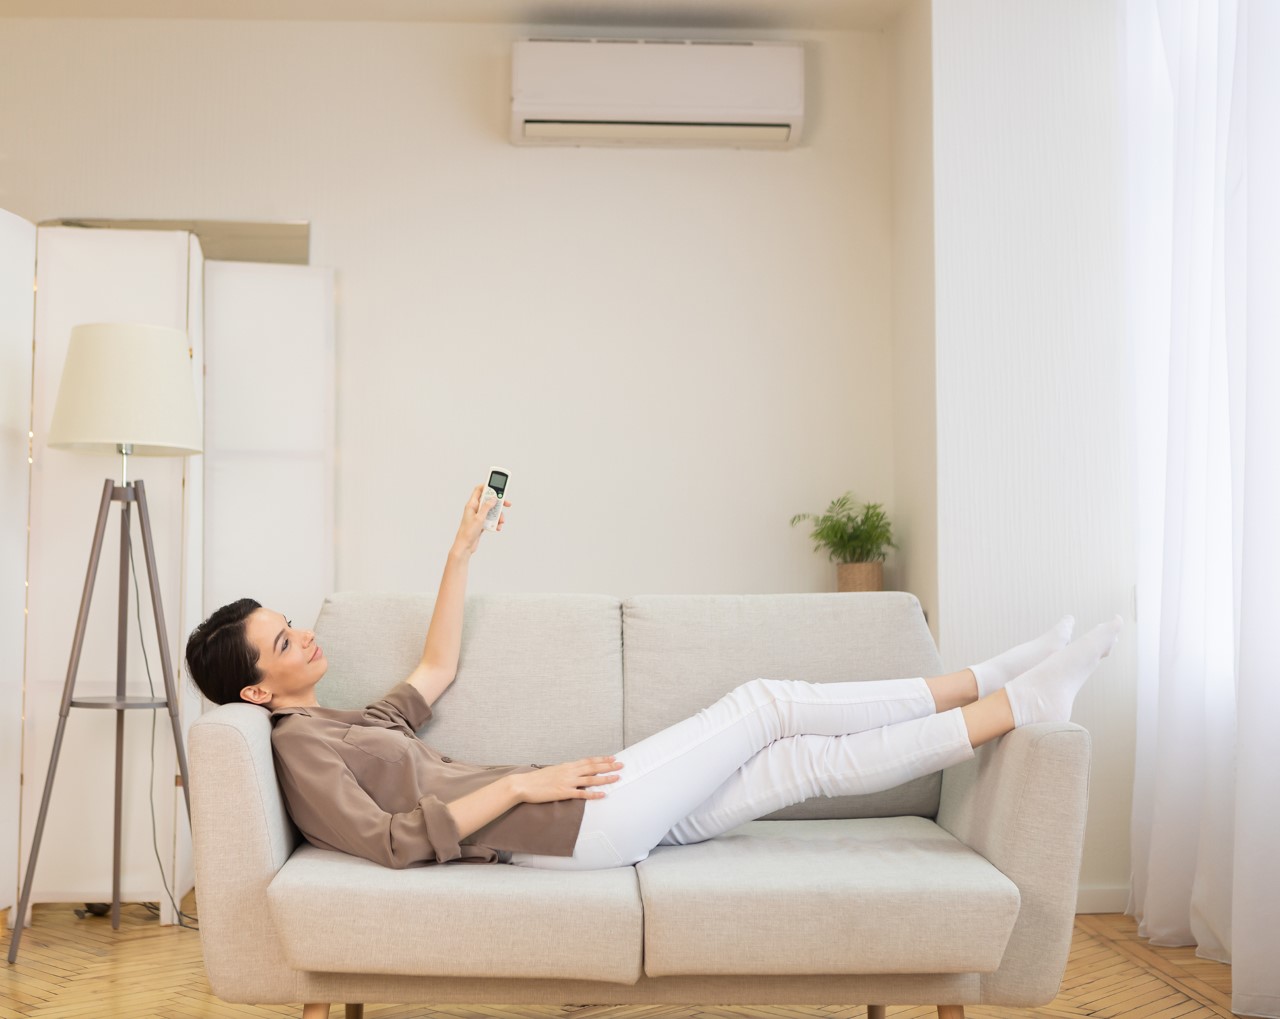 Cosas que debes saber antes de comprar un aire acondicionado 